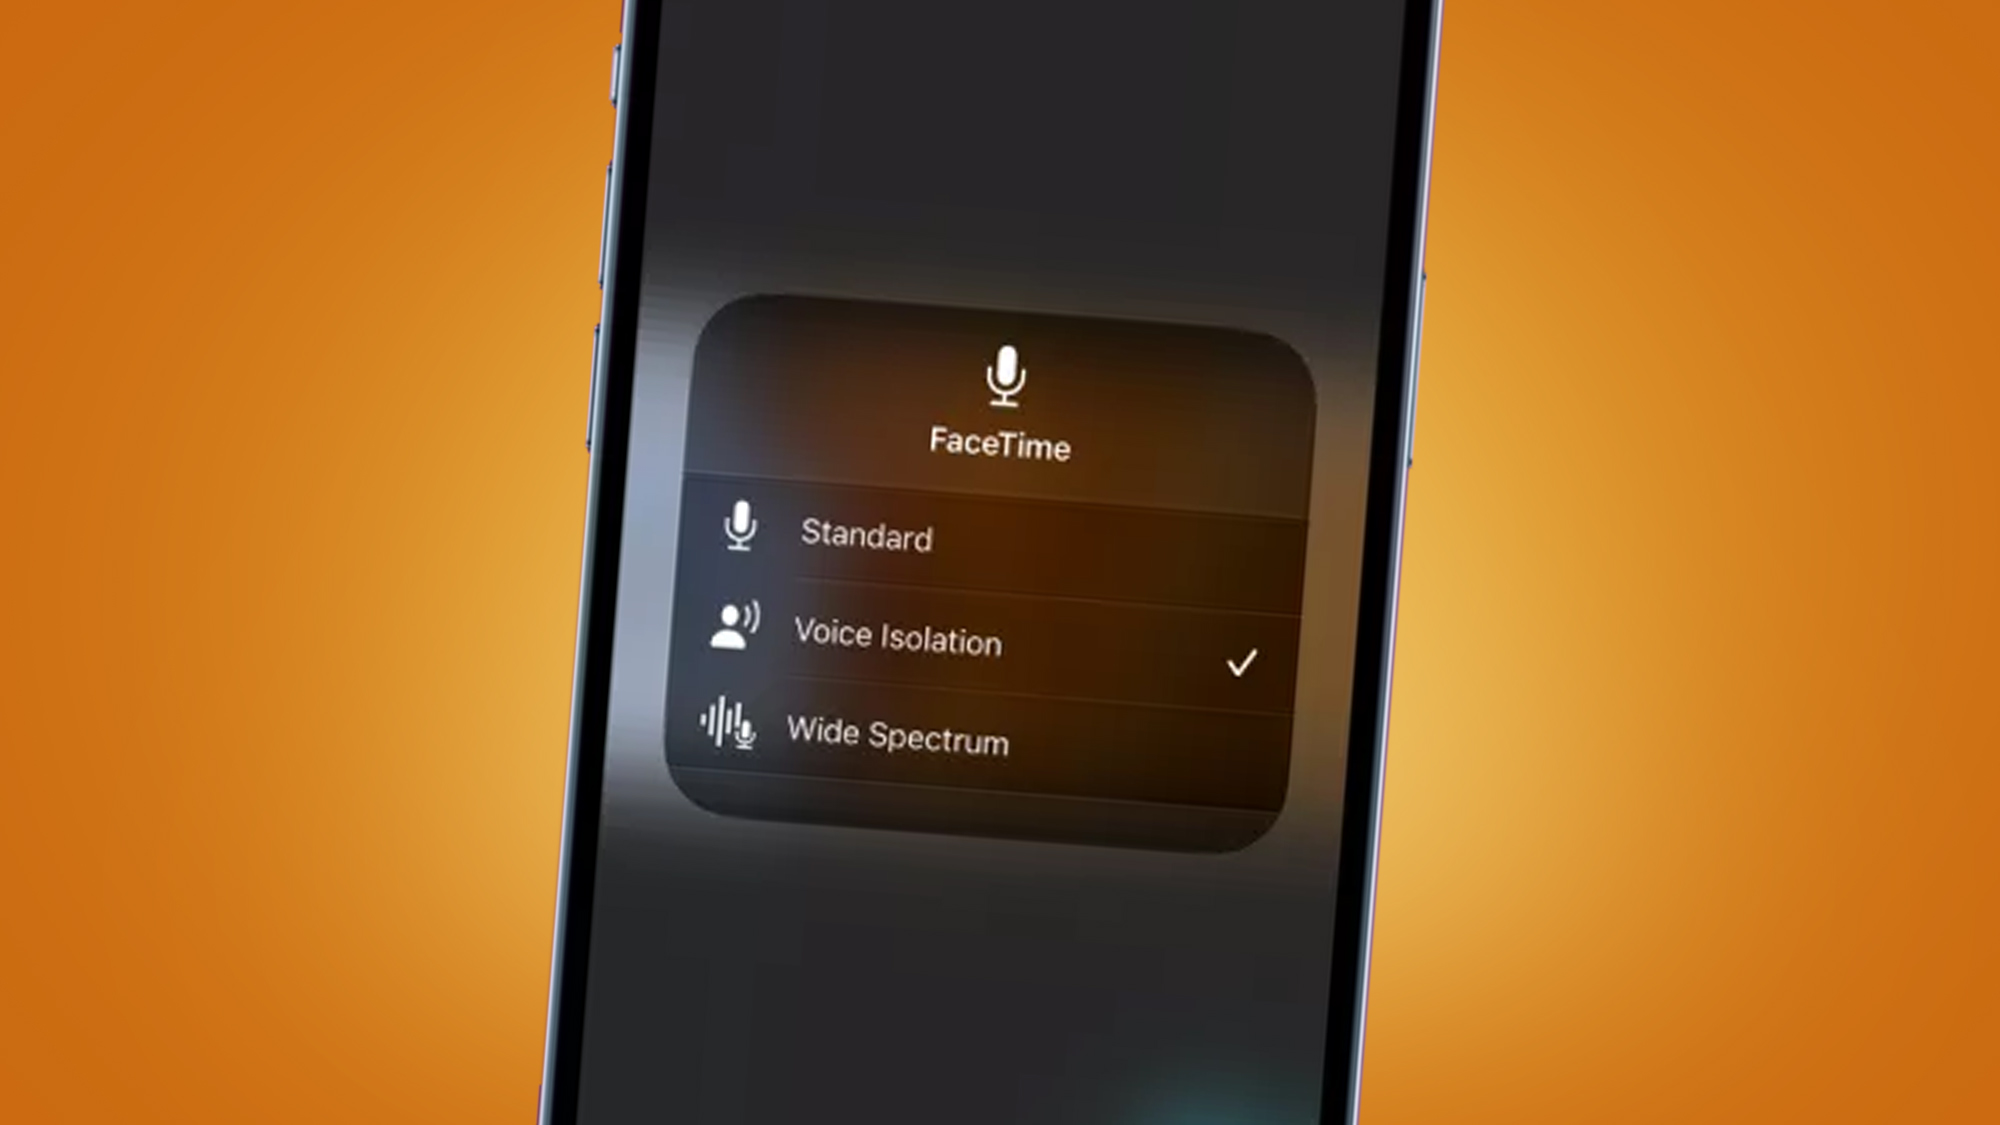 Un iPhone sur fond orange affichant les options audio FaceTime